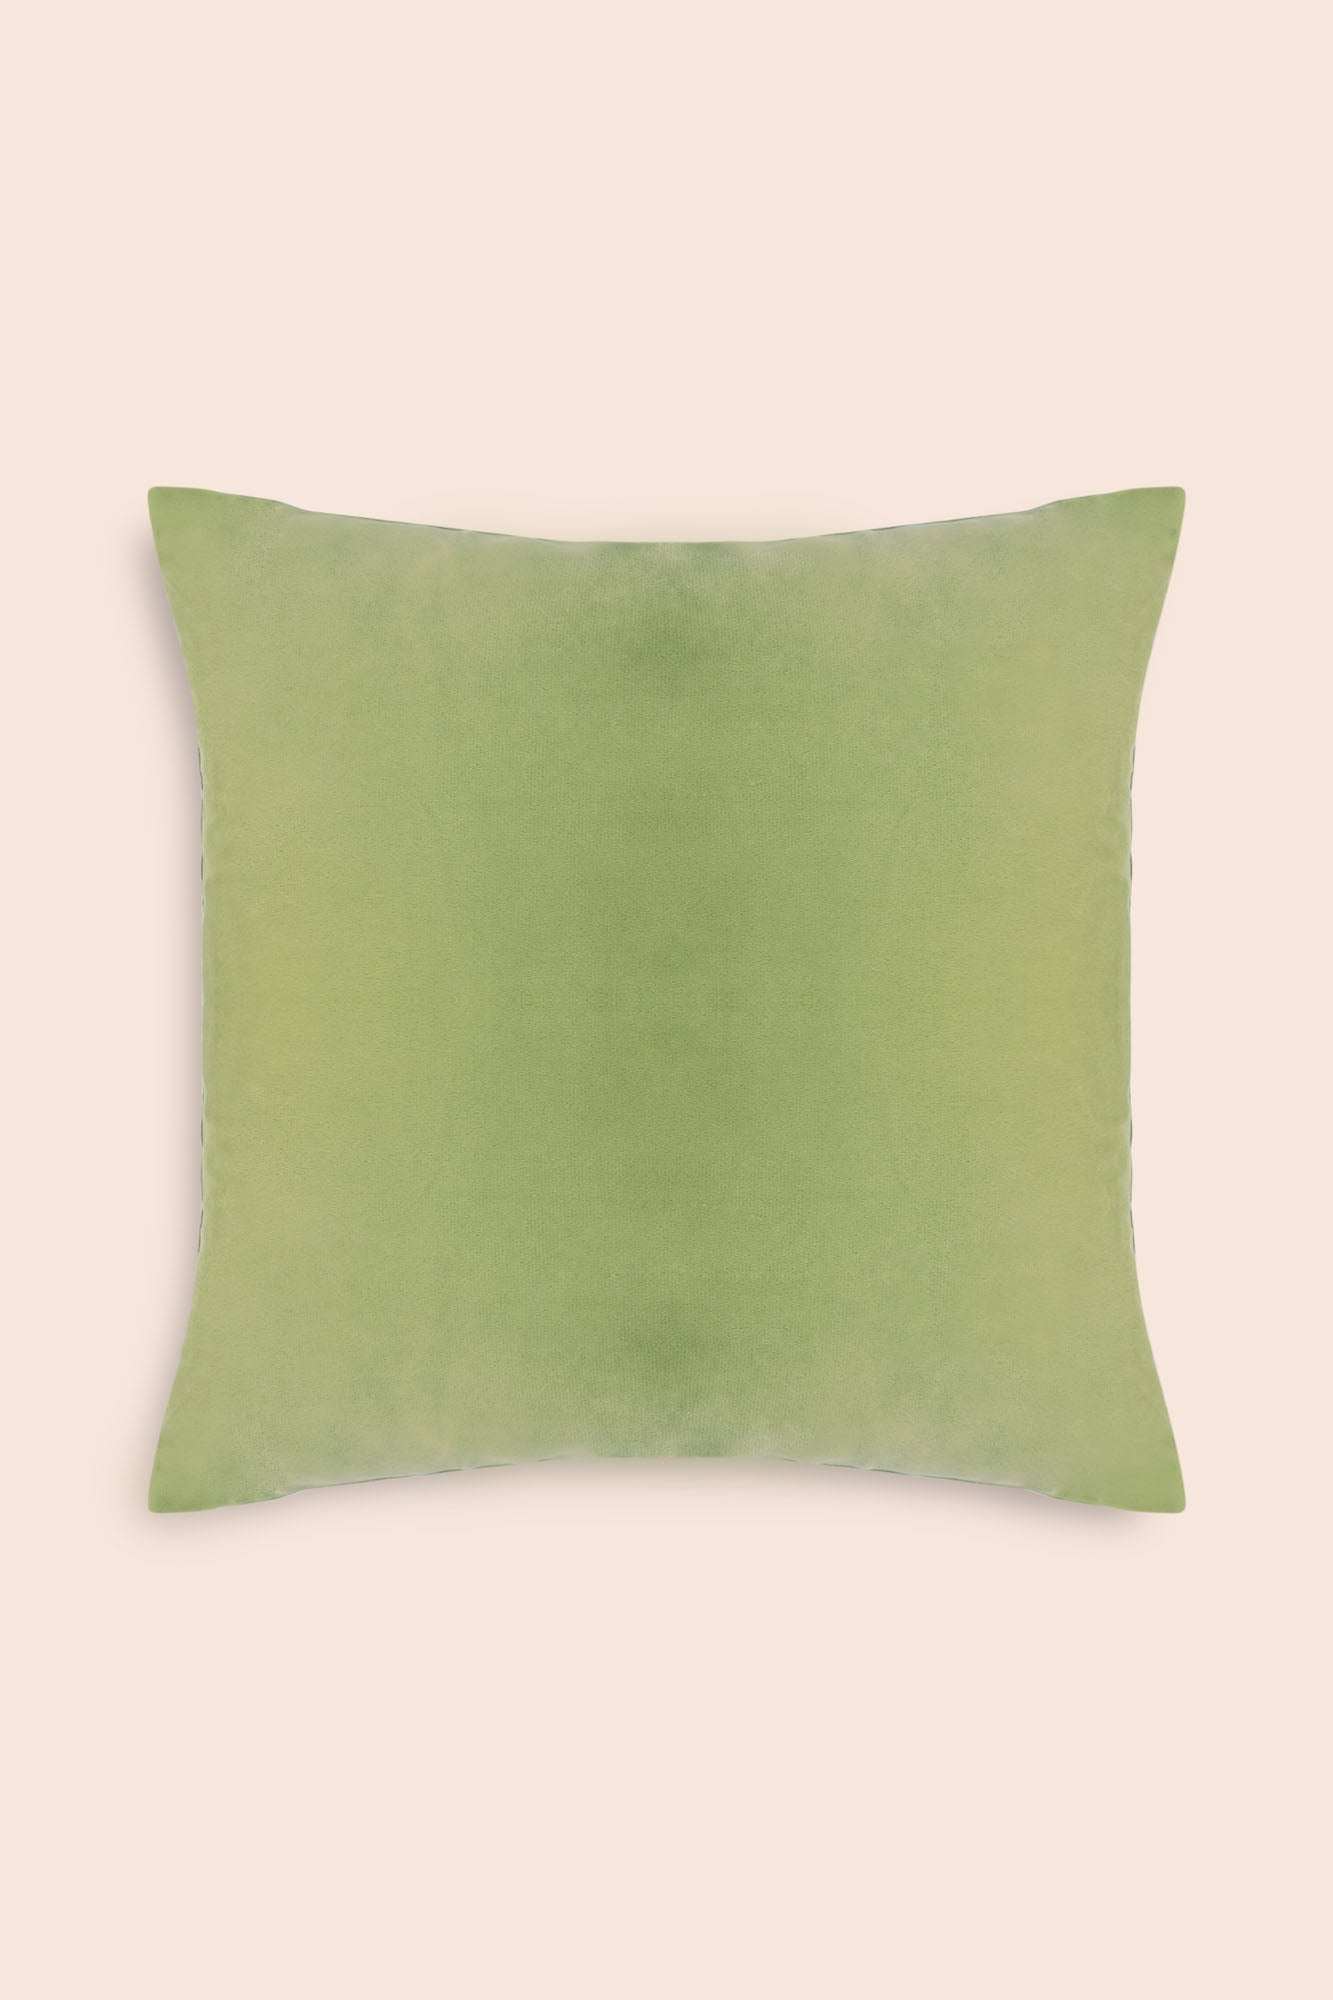 Glaze velvet cushion cover